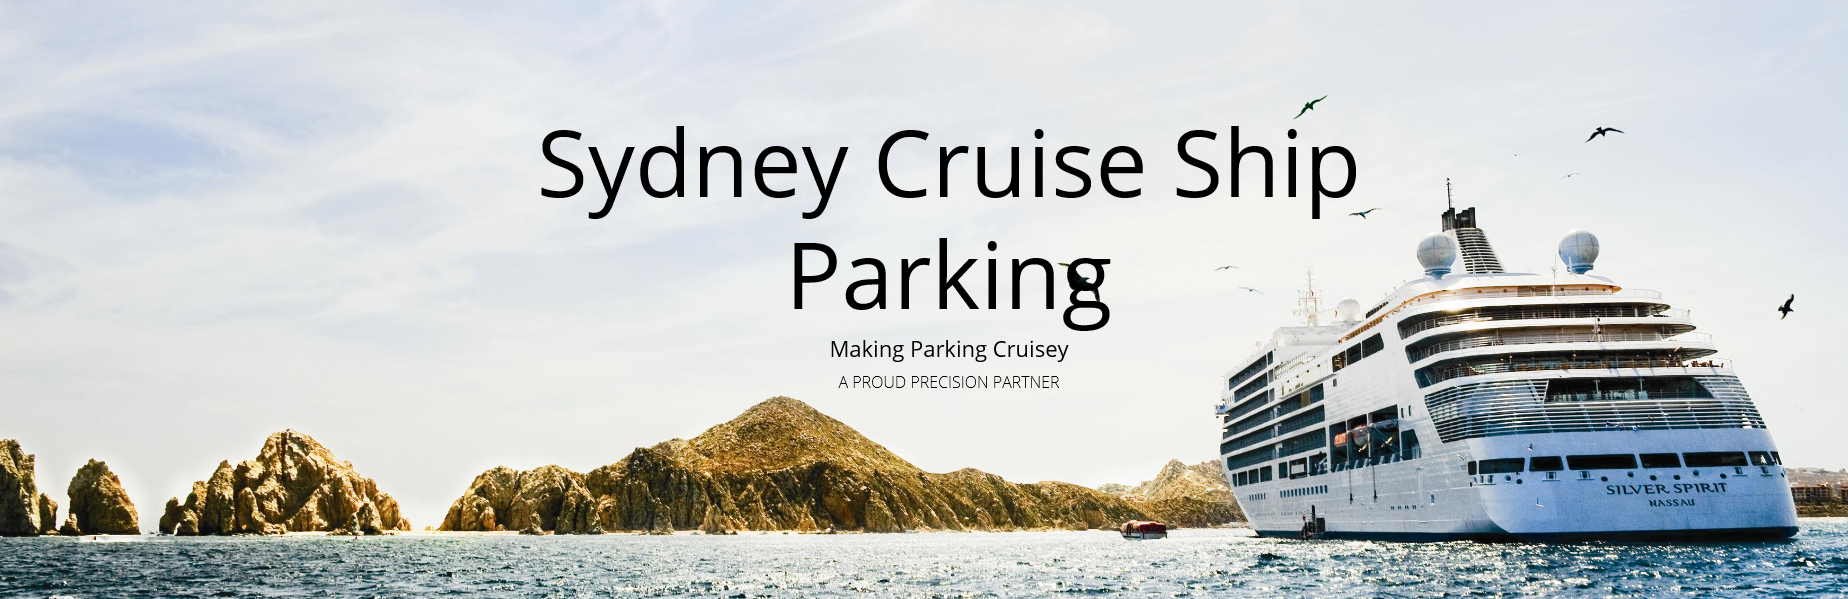 Sydney cruise ship parking